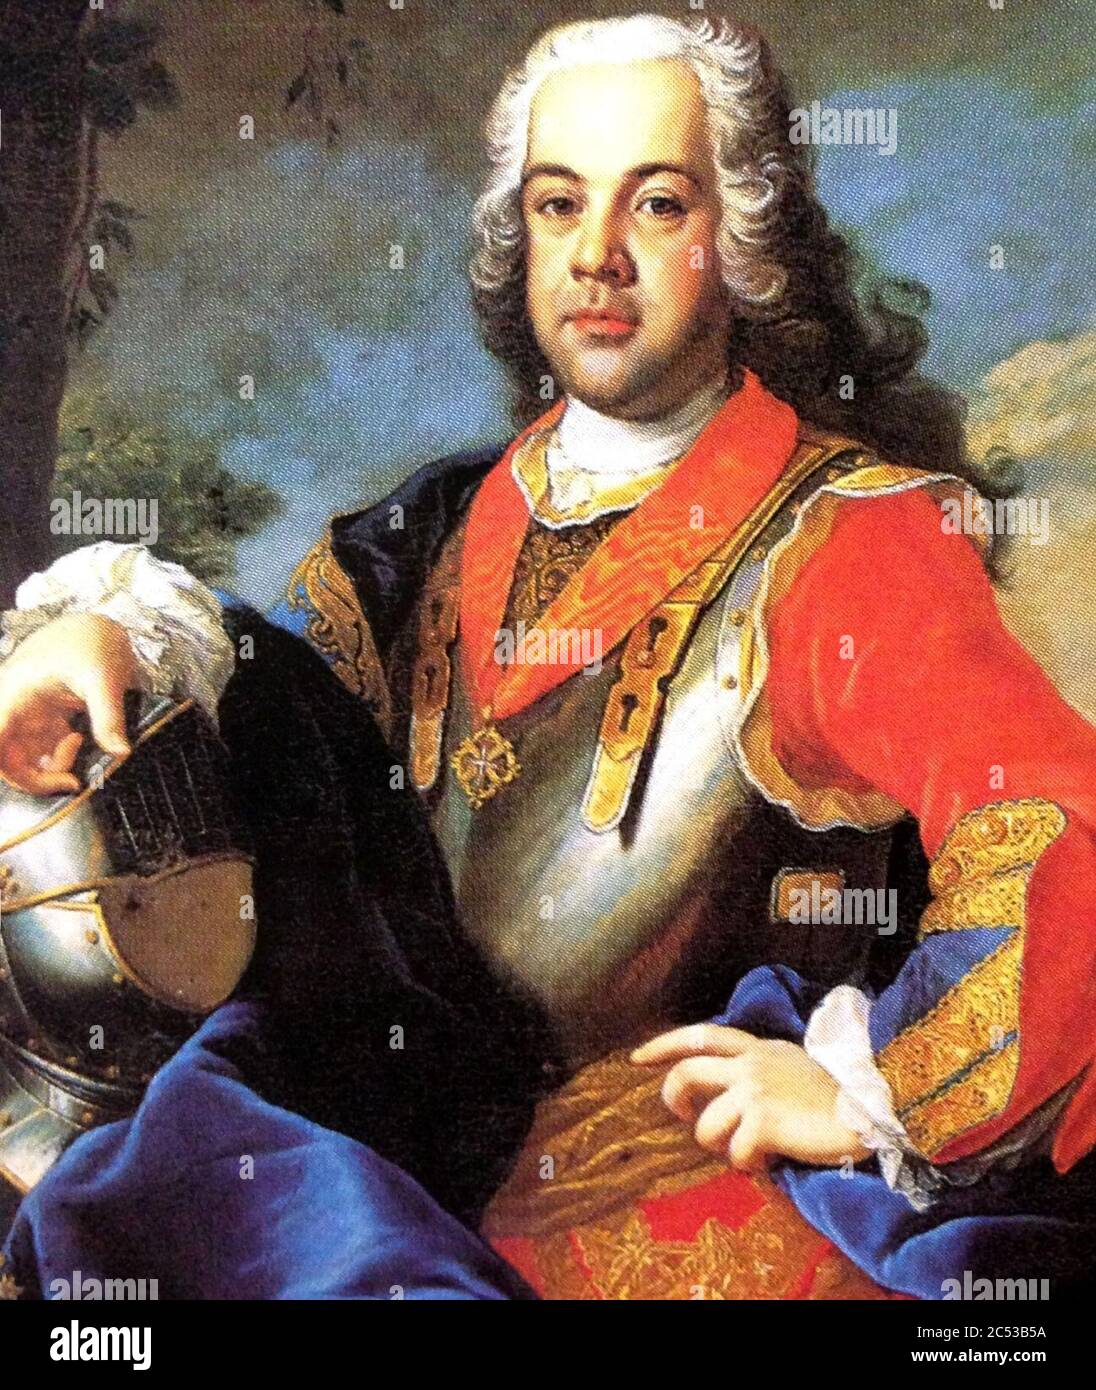 Infante Francisco, Duque de Beja (cropped). Stock Photo